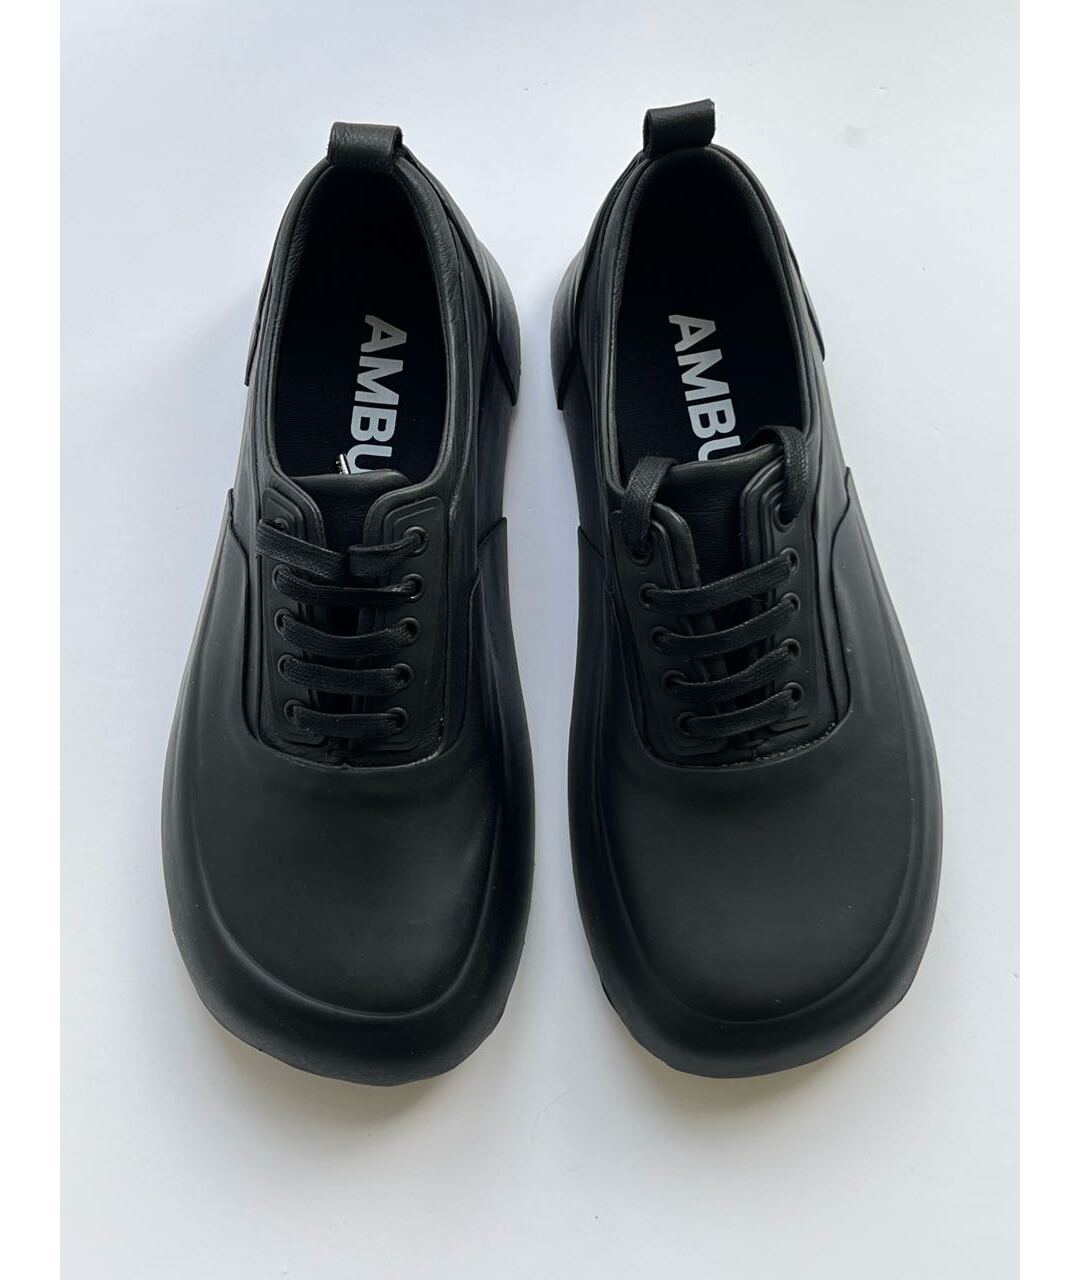 AMBUSH Черные резиновые низкие кроссовки / кеды, фото 2